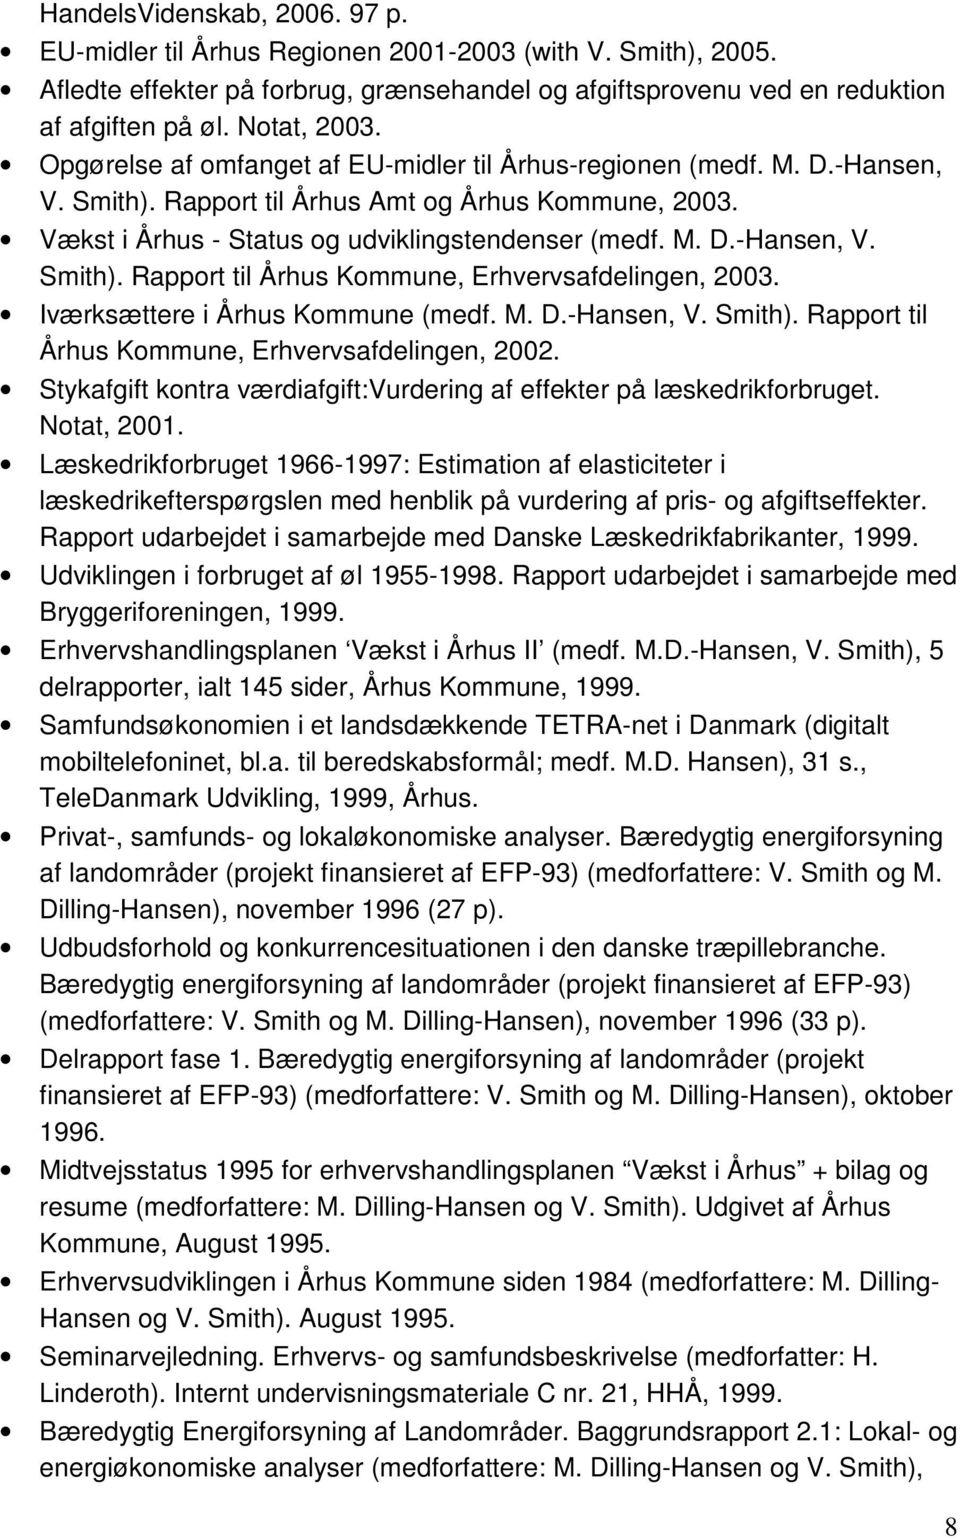 Iværksættere i Århus Kommune (medf. M. D.-Hansen, V. Smith). Rapport til Århus Kommune, Erhvervsafdelingen, 2002. Stykafgift kontra værdiafgift:vurdering af effekter på læskedrikforbruget.